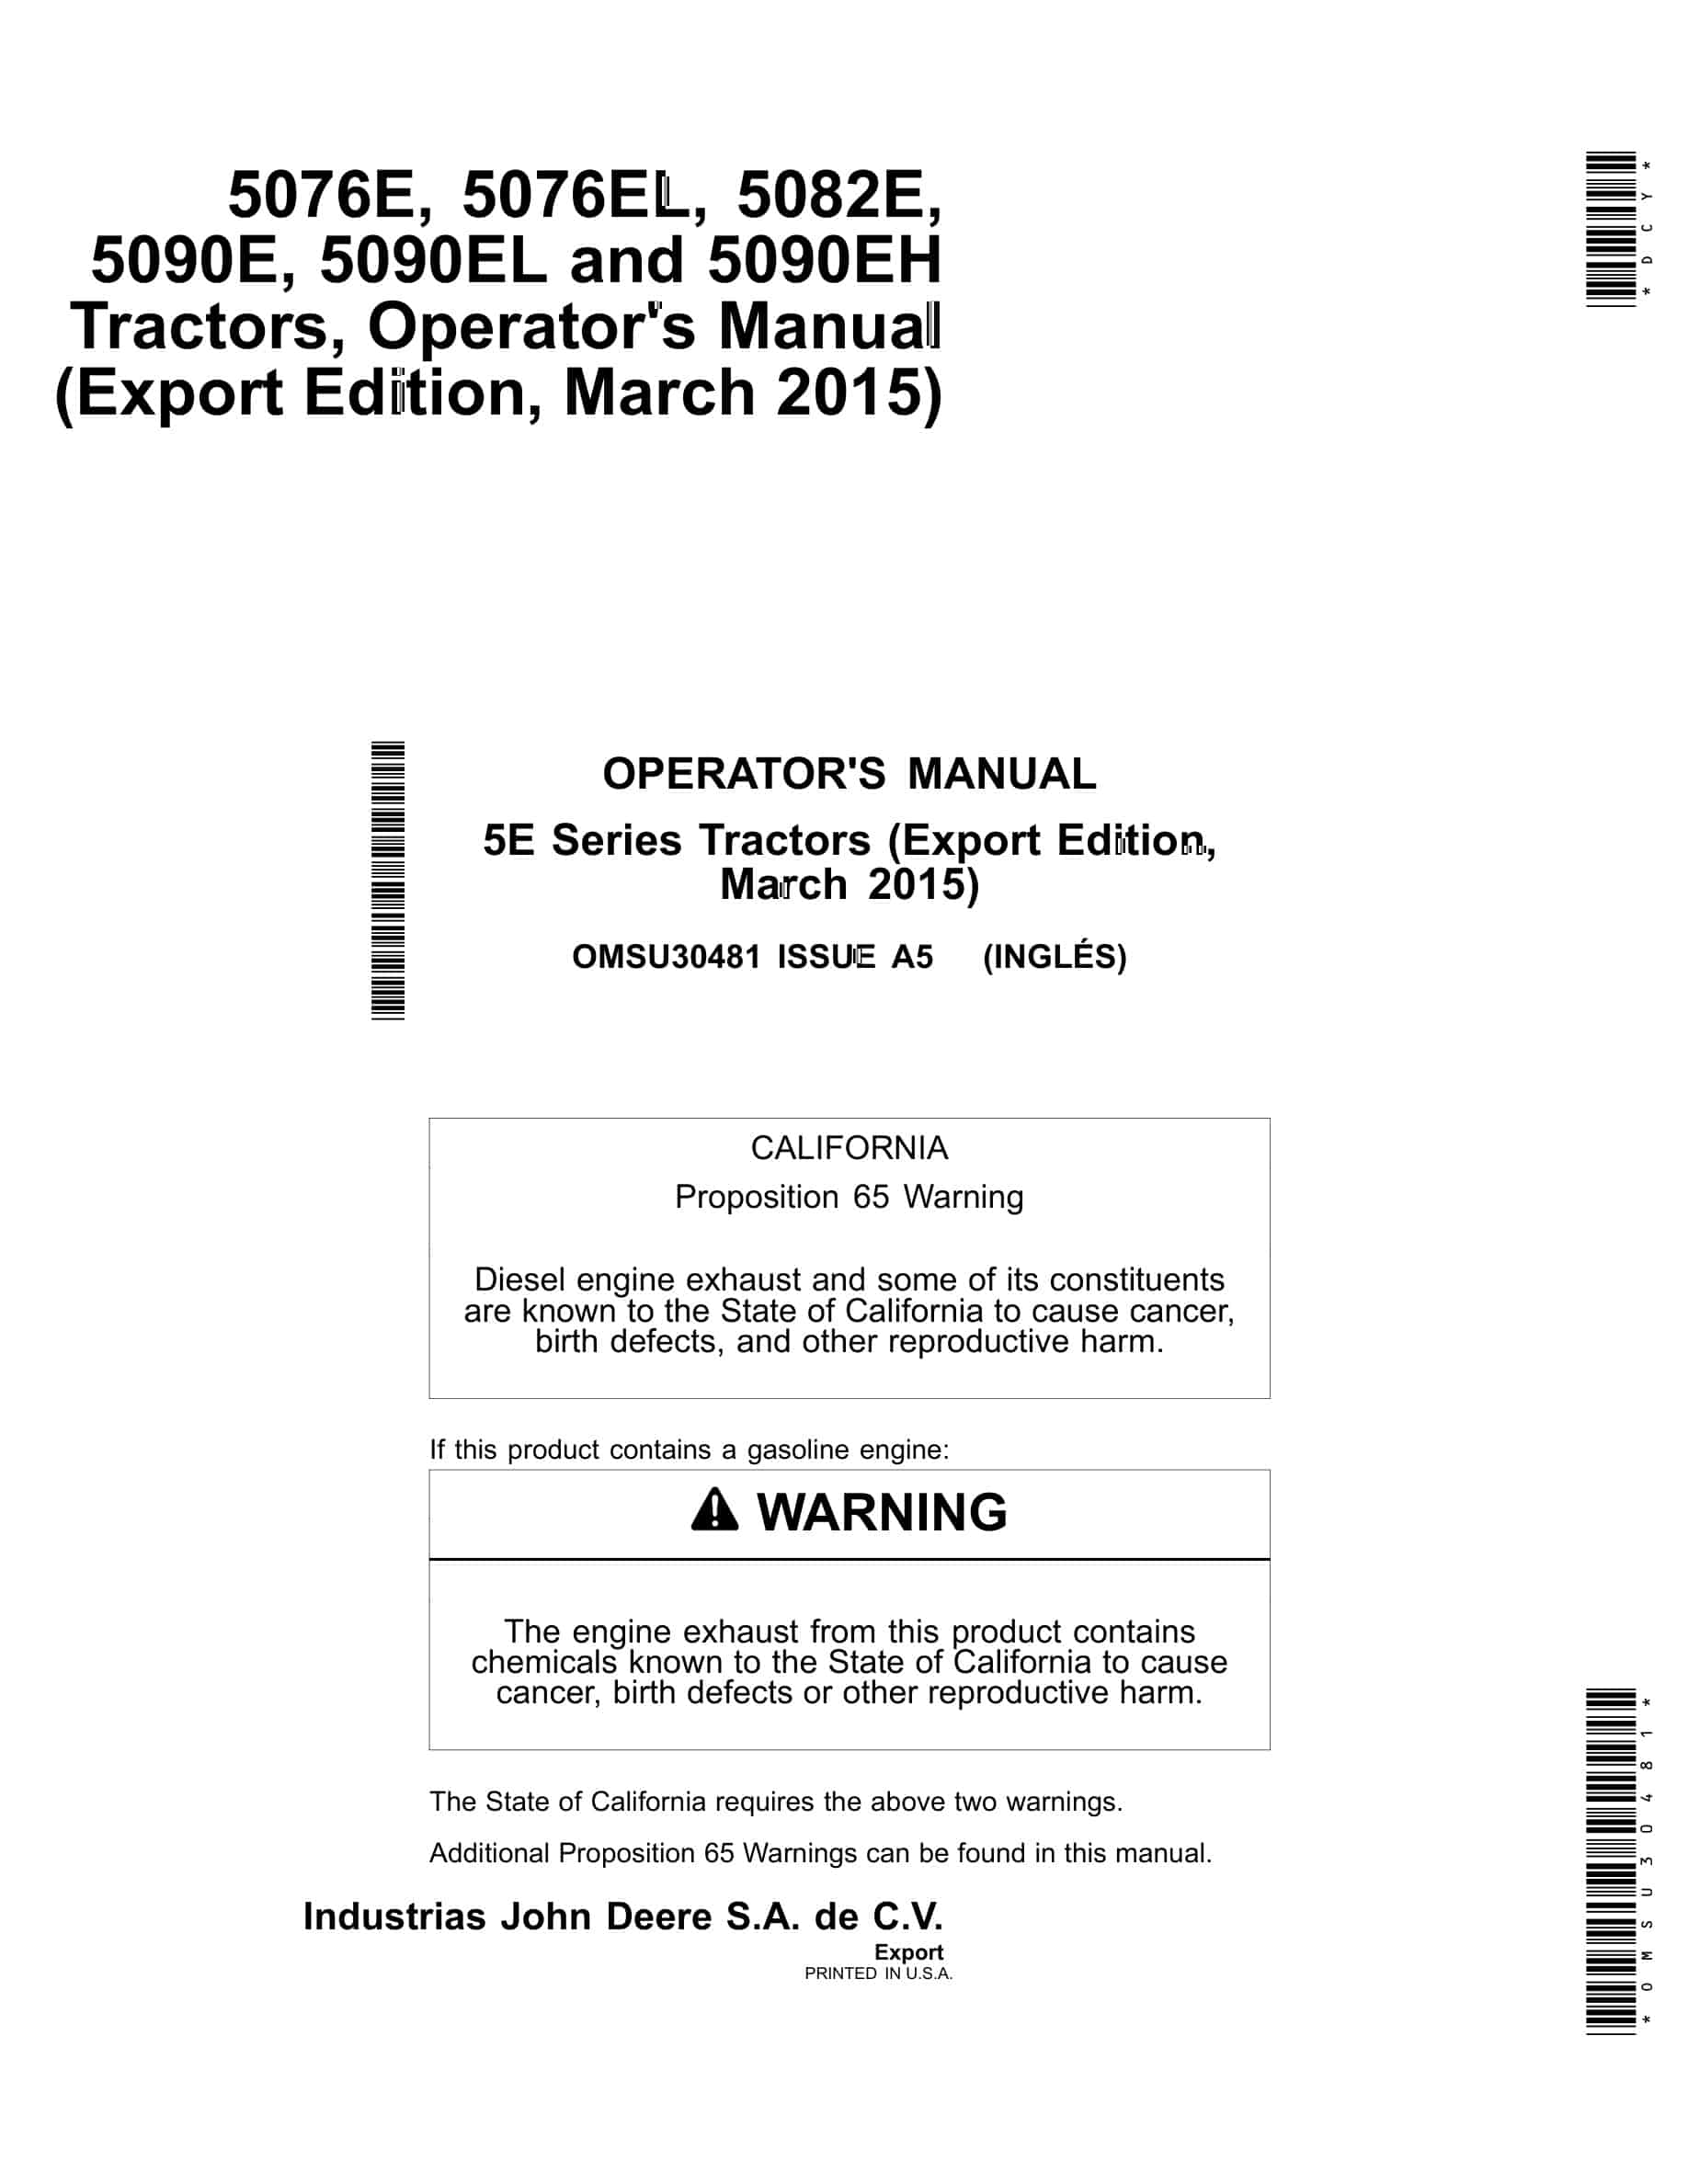 John Deere 5076e, 5076el, 5082e, 5090e, 5090el And 5090eh Tractors Operator Manuals OMSU30481-1